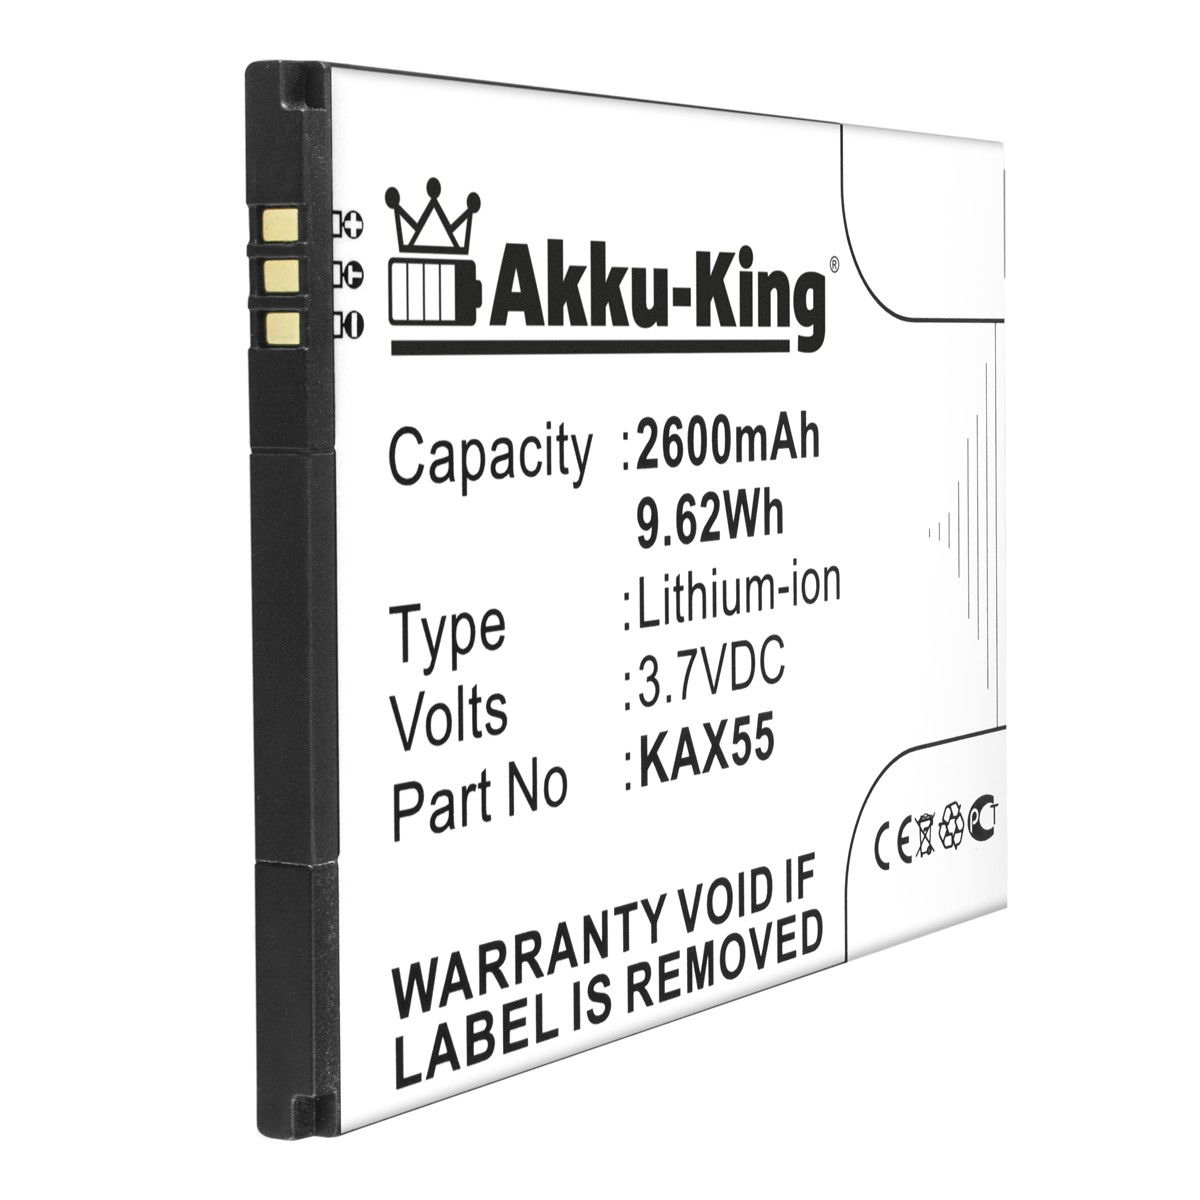 Handy-Akku, 2600mAh Li-Ion KAX55 Akku mit 3.7 Volt, AKKU-KING Kazam kompatibel